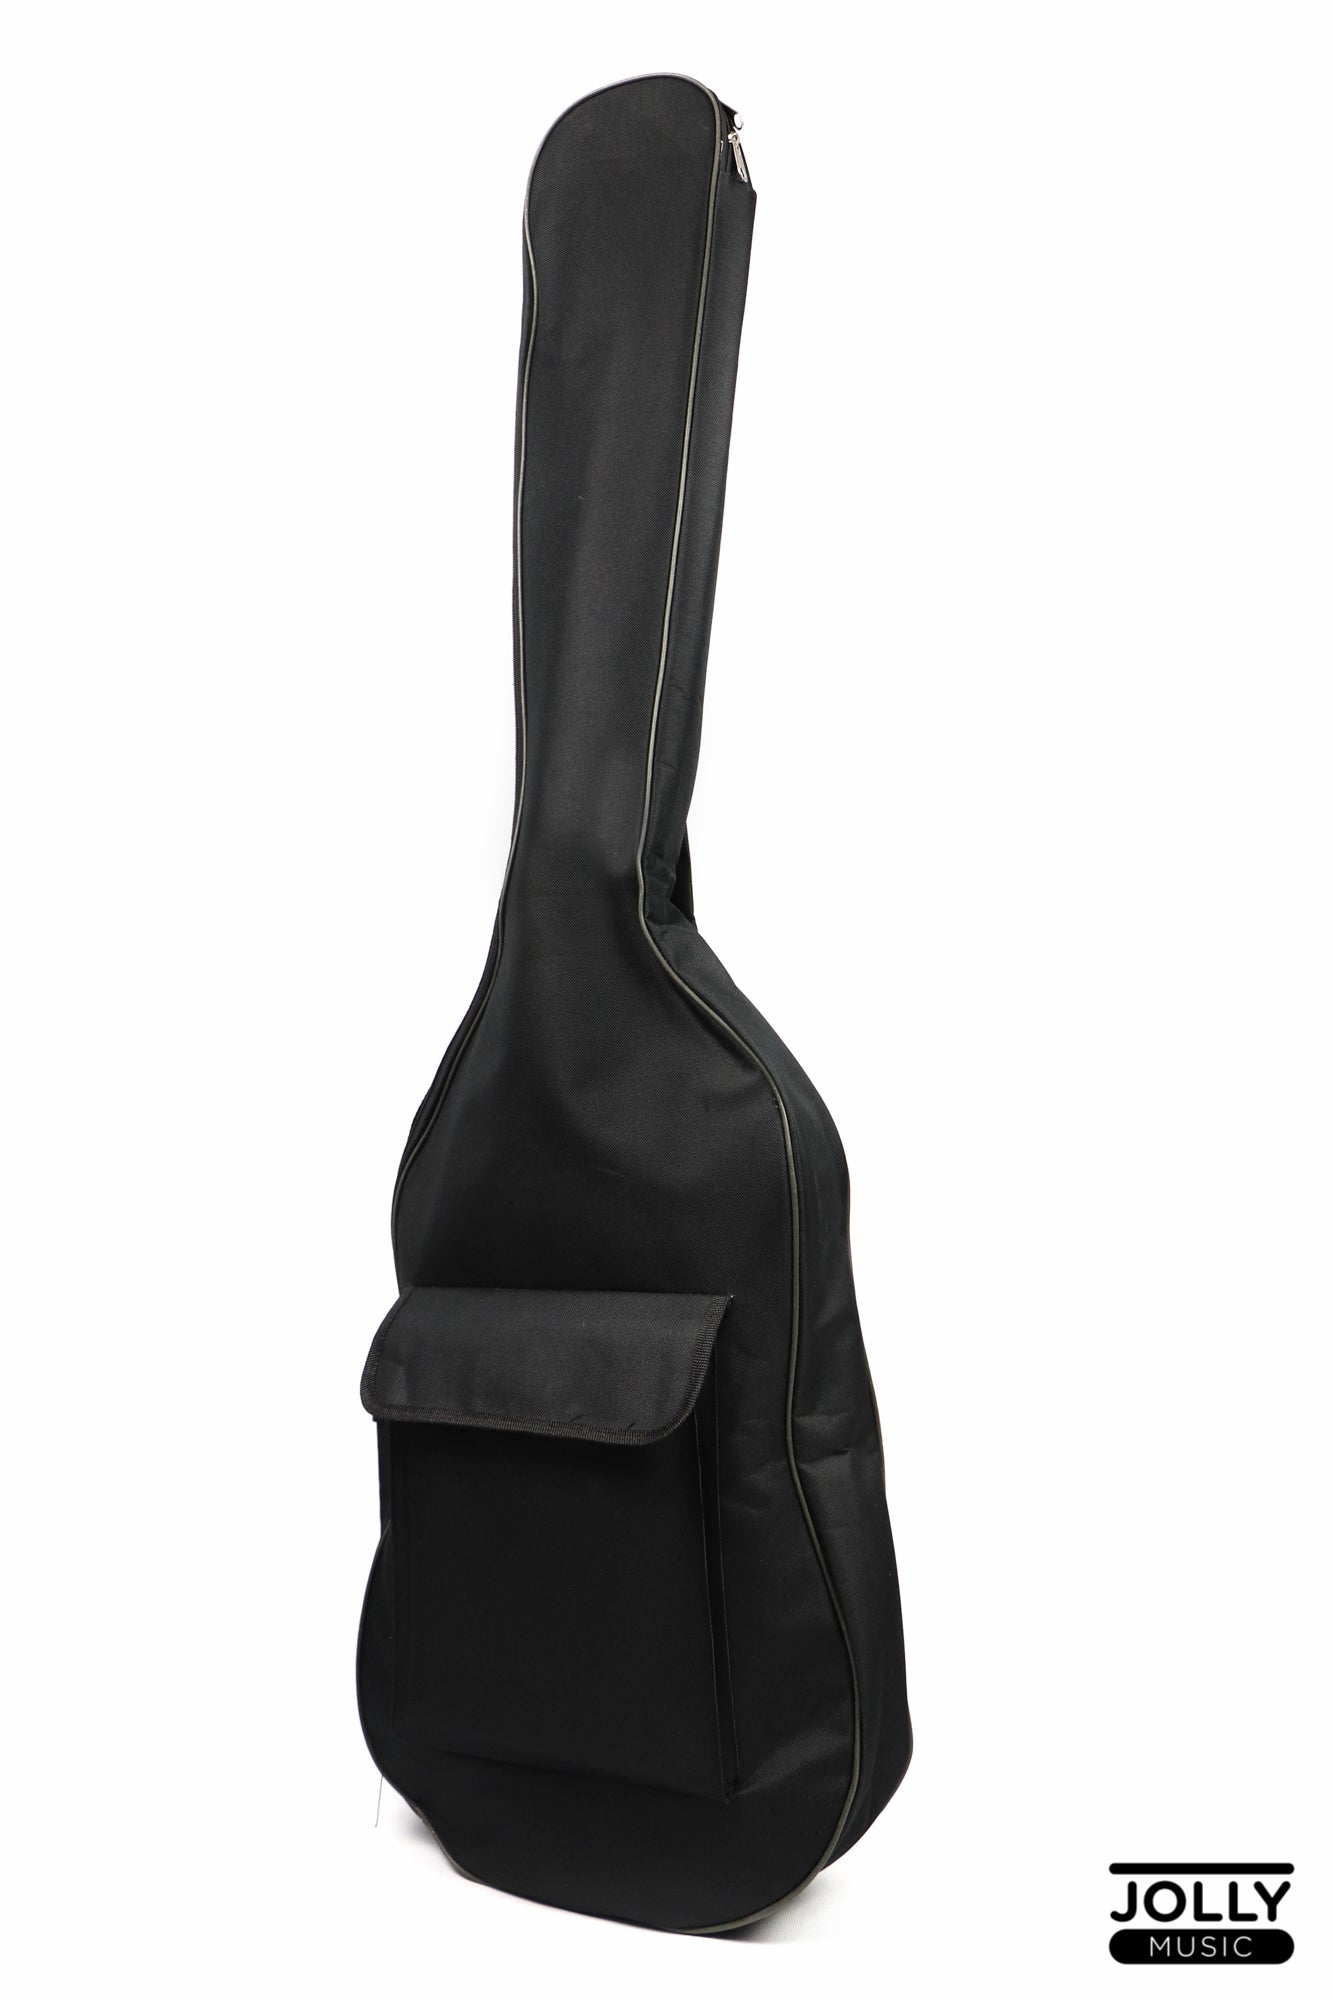 JCraft PG-B11 Electric Bass Gig Bag